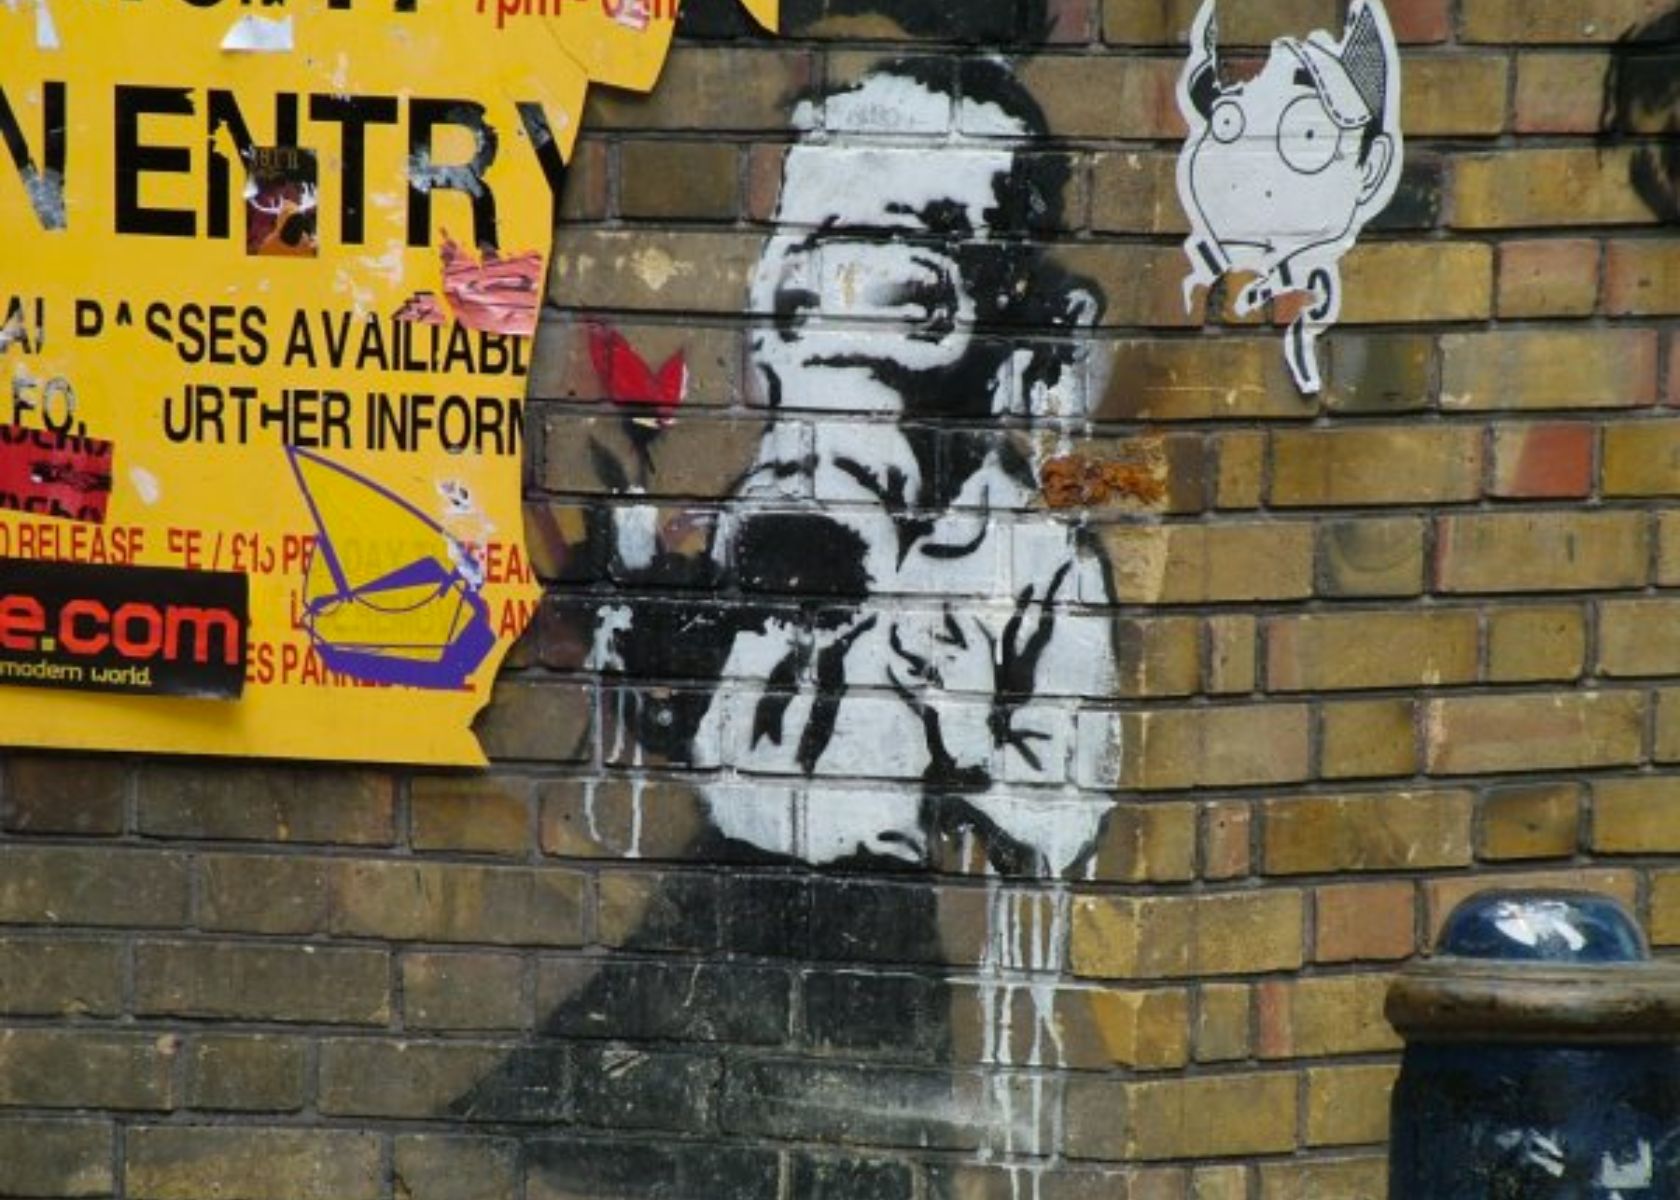 Banksy Art in Brick Lane, East End